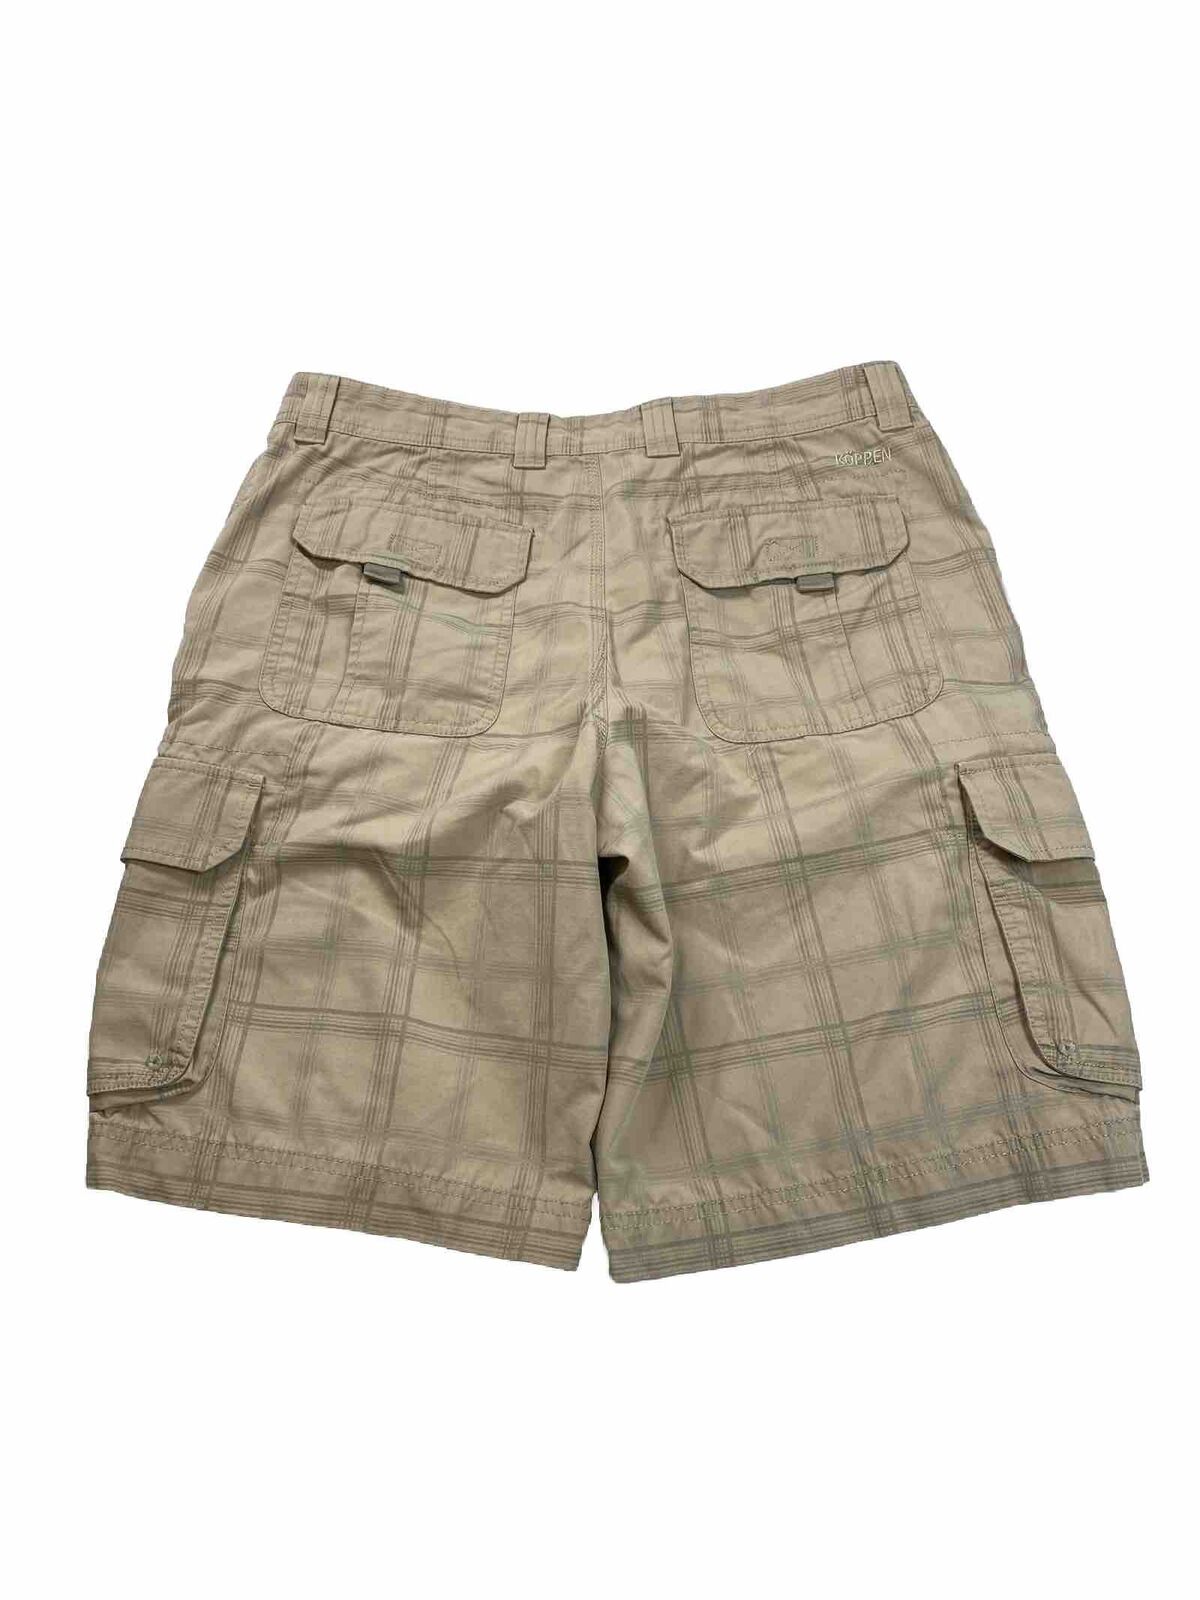 Koppen Men's Beige Plaid Cotton Blend Cargo Shorts - 36